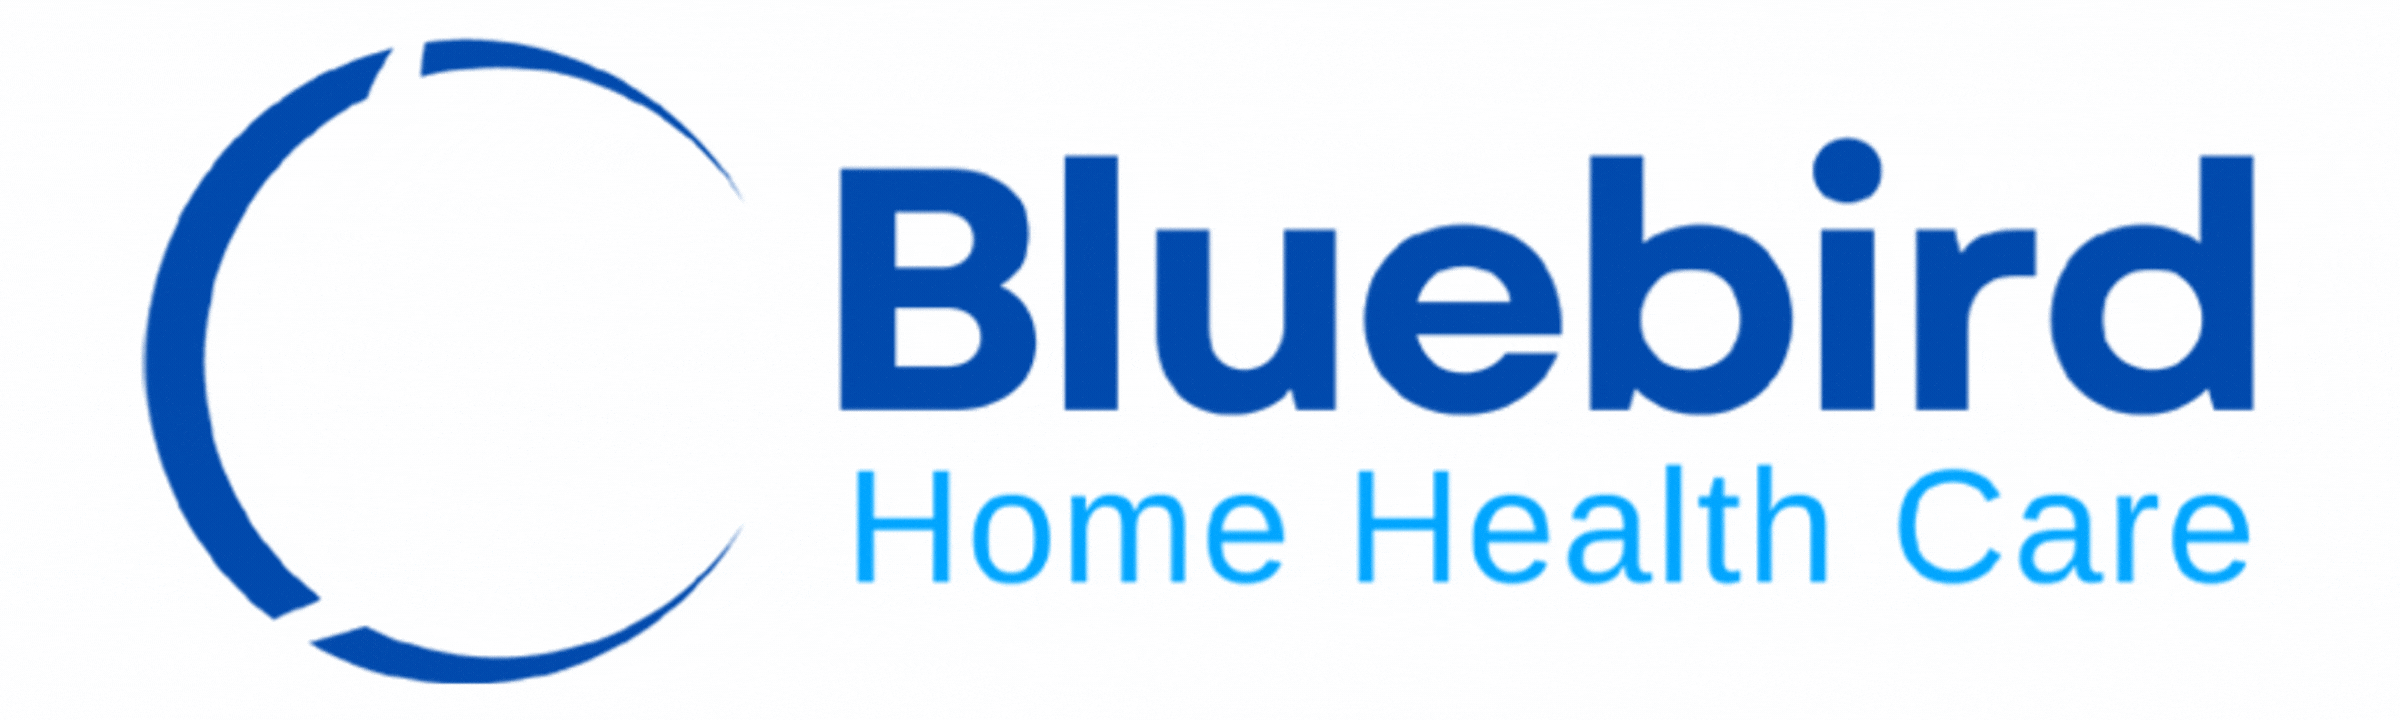 Bluebird Home Health Care 